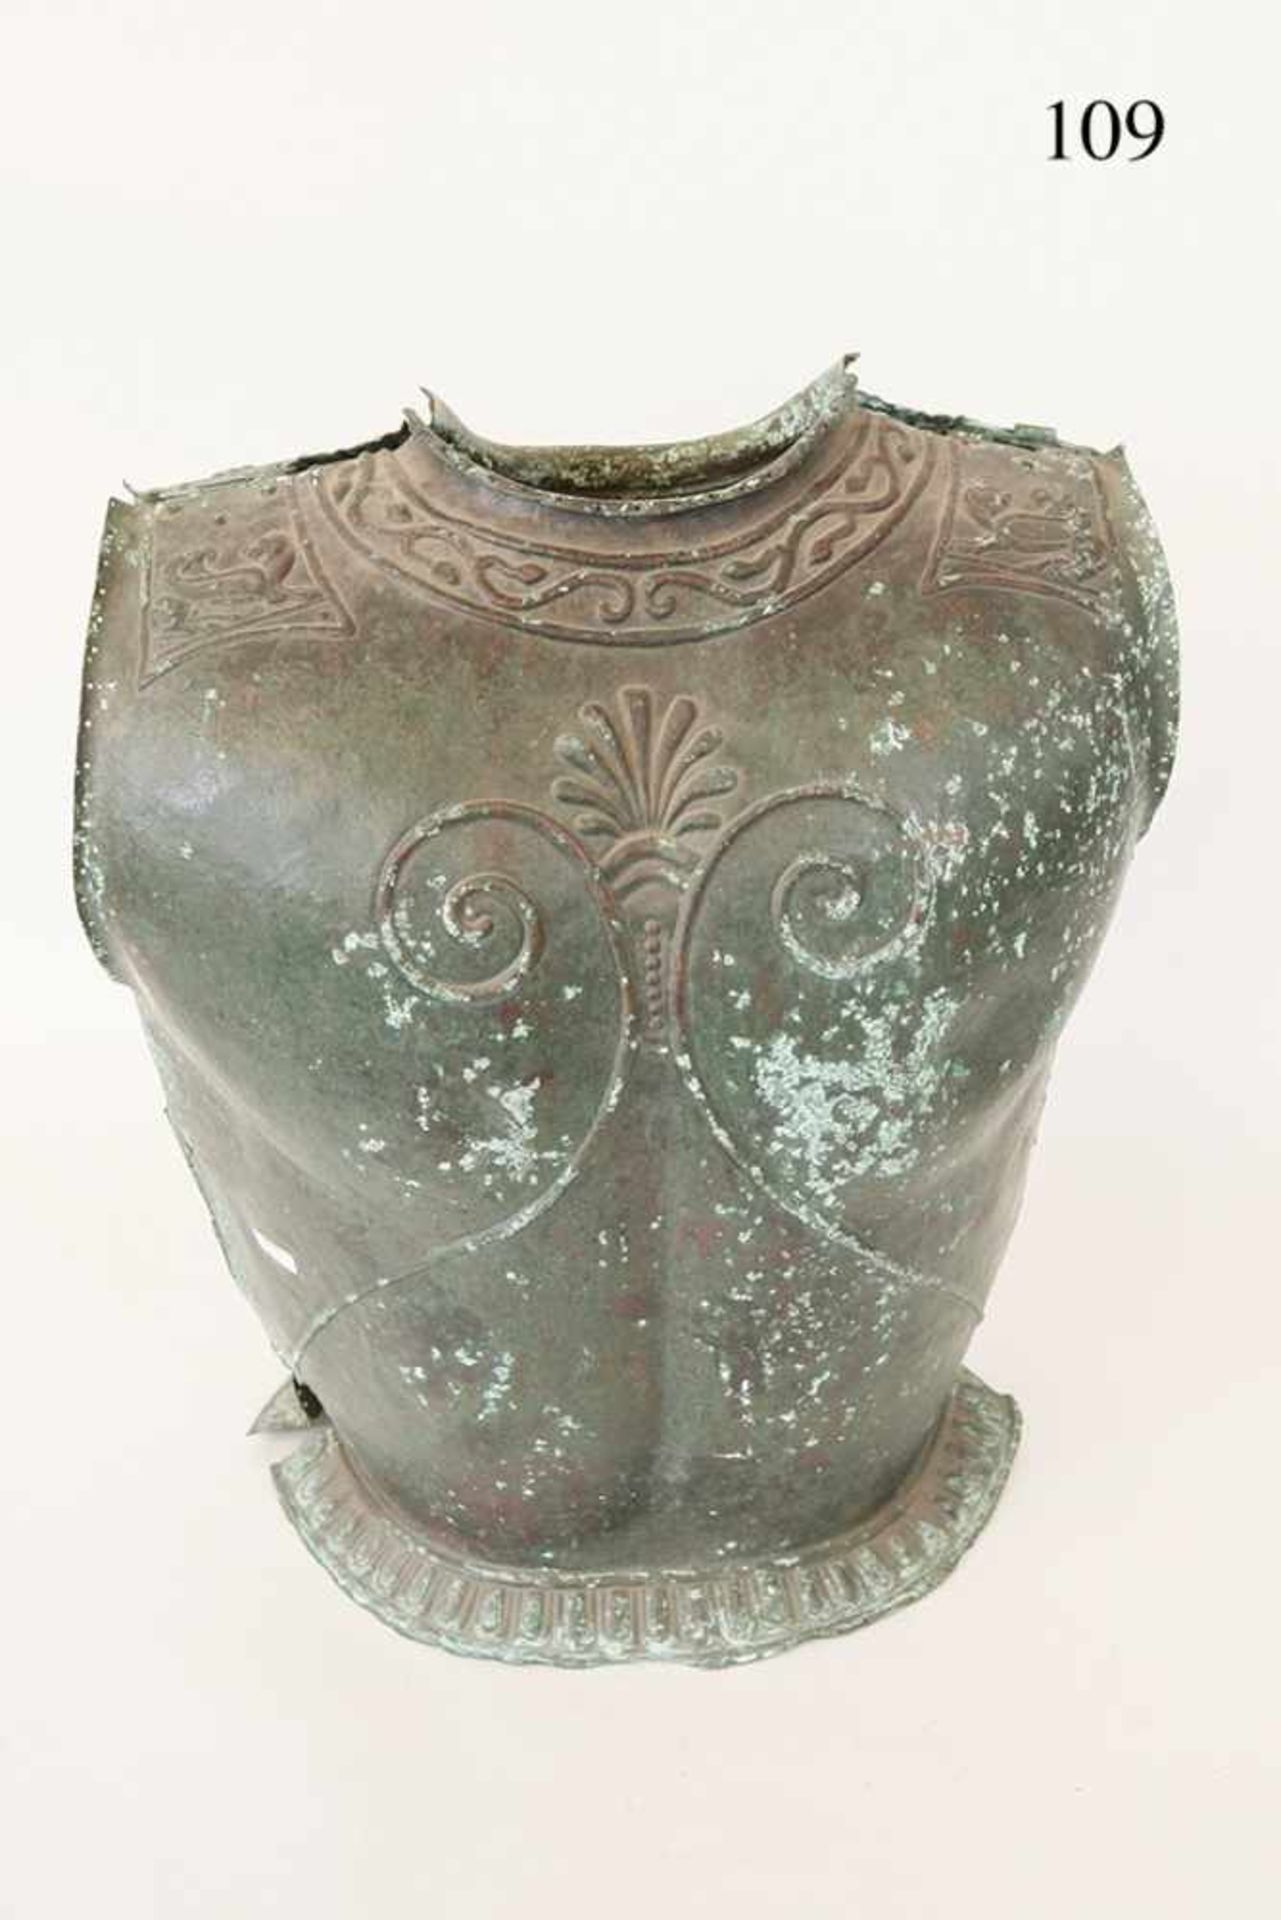 Bronzekürass, etruskisch, ca. 500 v.Chr. Bronze, getrieben. Brust und Rücken. Anatomisch geformt. - Image 4 of 4